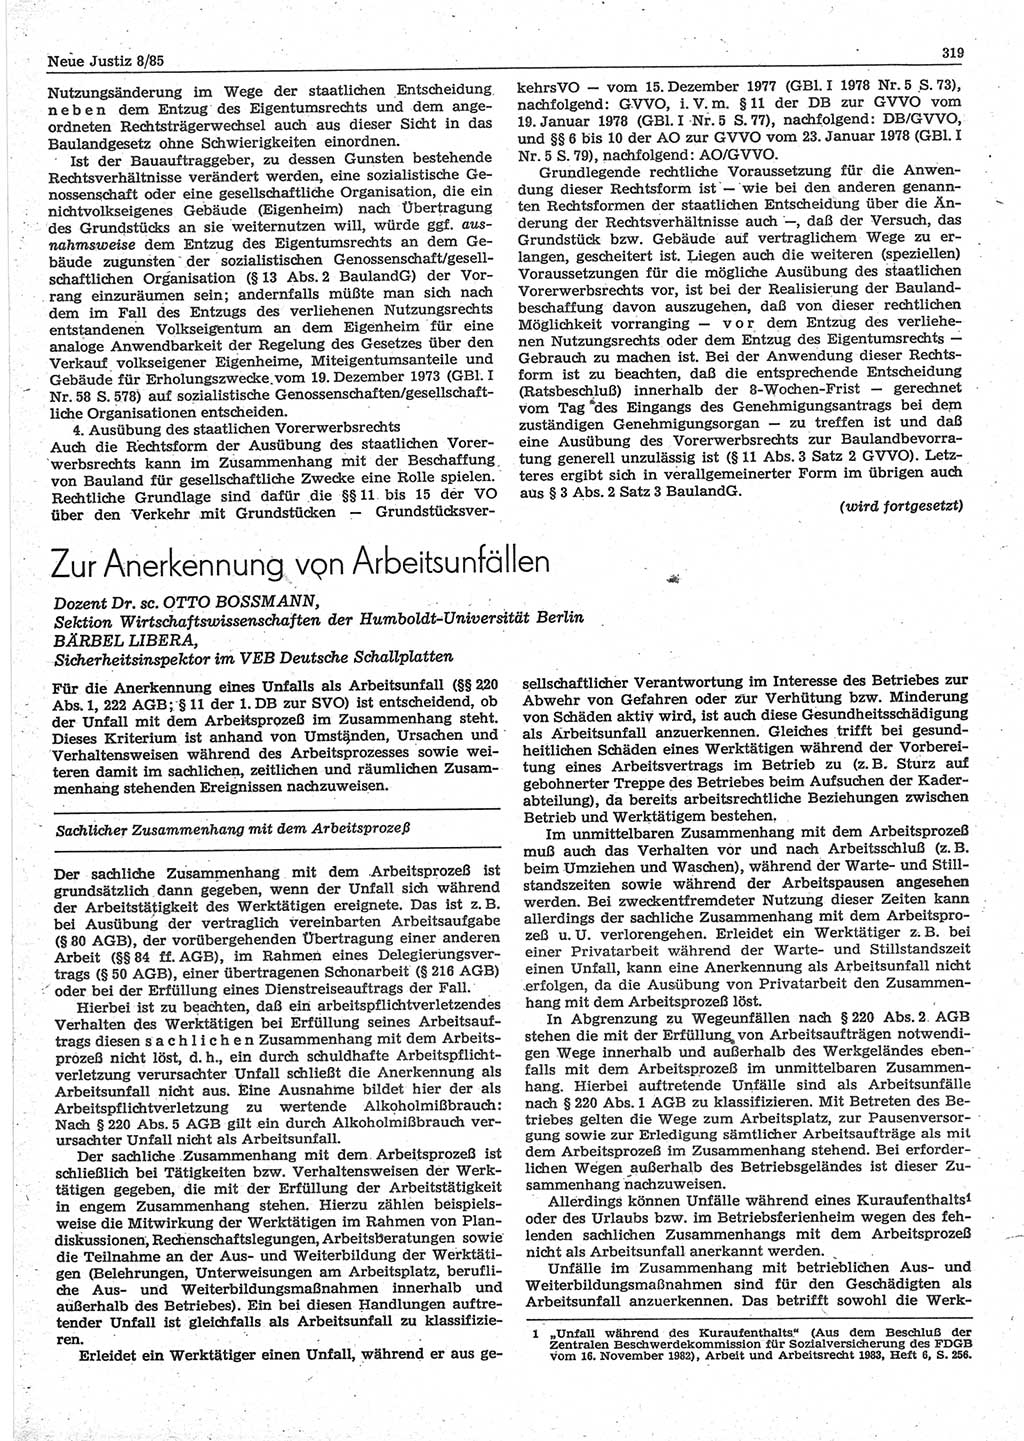 Neue Justiz (NJ), Zeitschrift für sozialistisches Recht und Gesetzlichkeit [Deutsche Demokratische Republik (DDR)], 39. Jahrgang 1985, Seite 319 (NJ DDR 1985, S. 319)